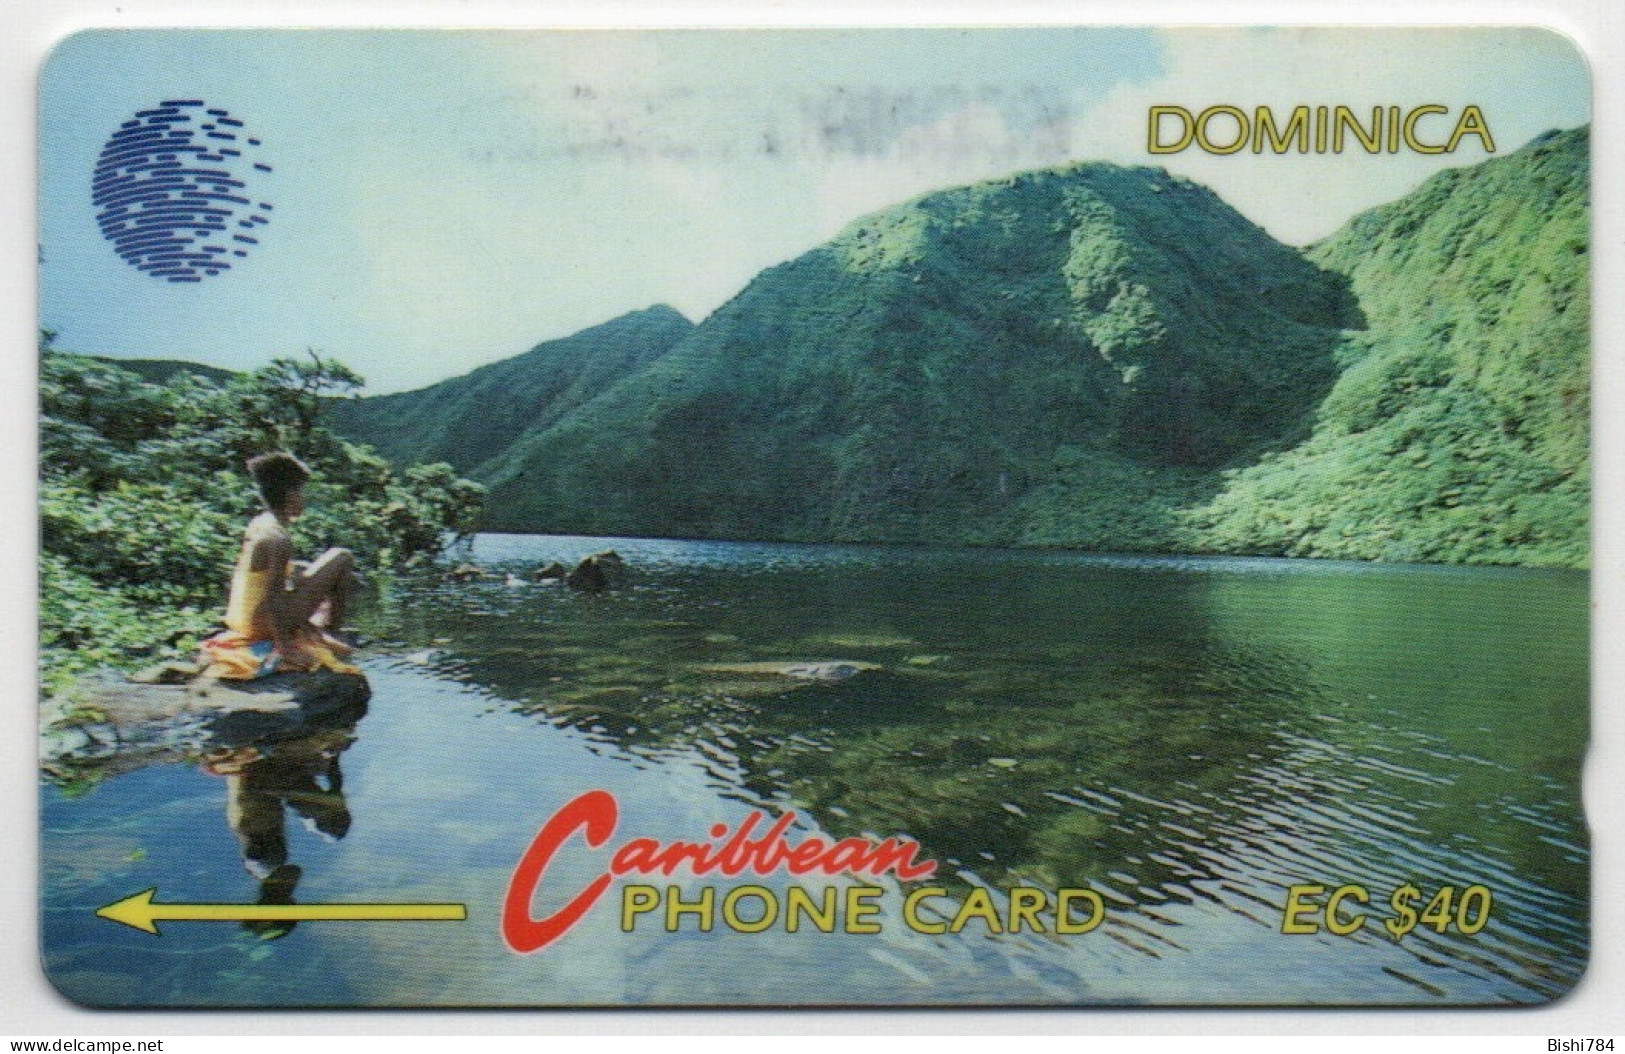 Dominica - River Scene - 5CDMA - Dominica